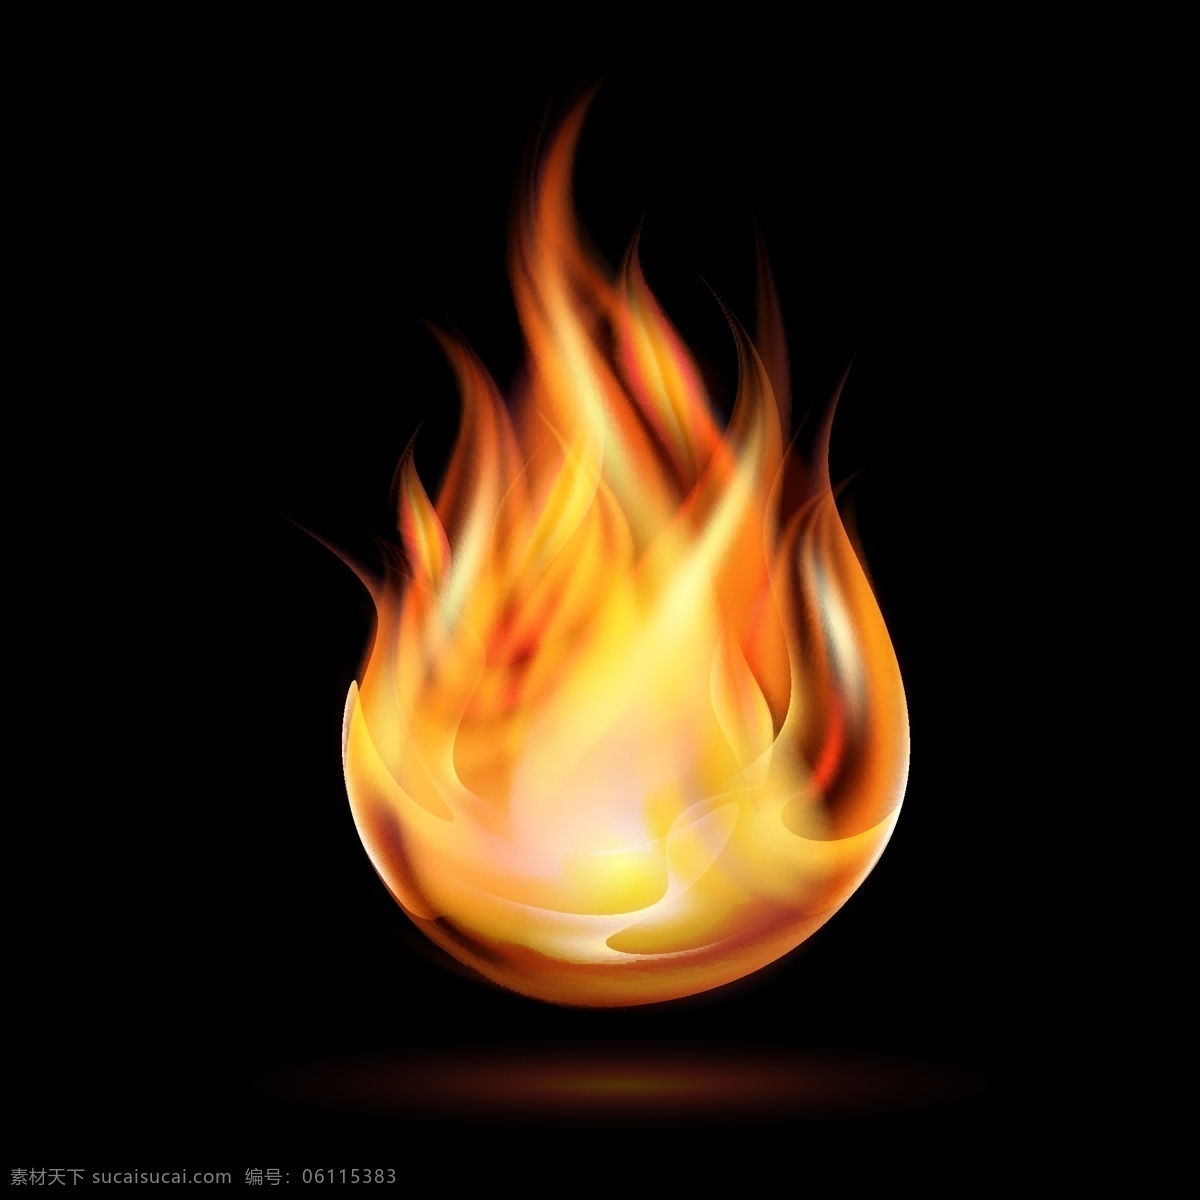 火焰 燃烧 焰火 火素材 火焰背景 红色火焰 动感火焰 漂亮的火焰 烈焰效果 跳跃 烈火 大火 燃烧的火焰 火光 金黄色 火苗